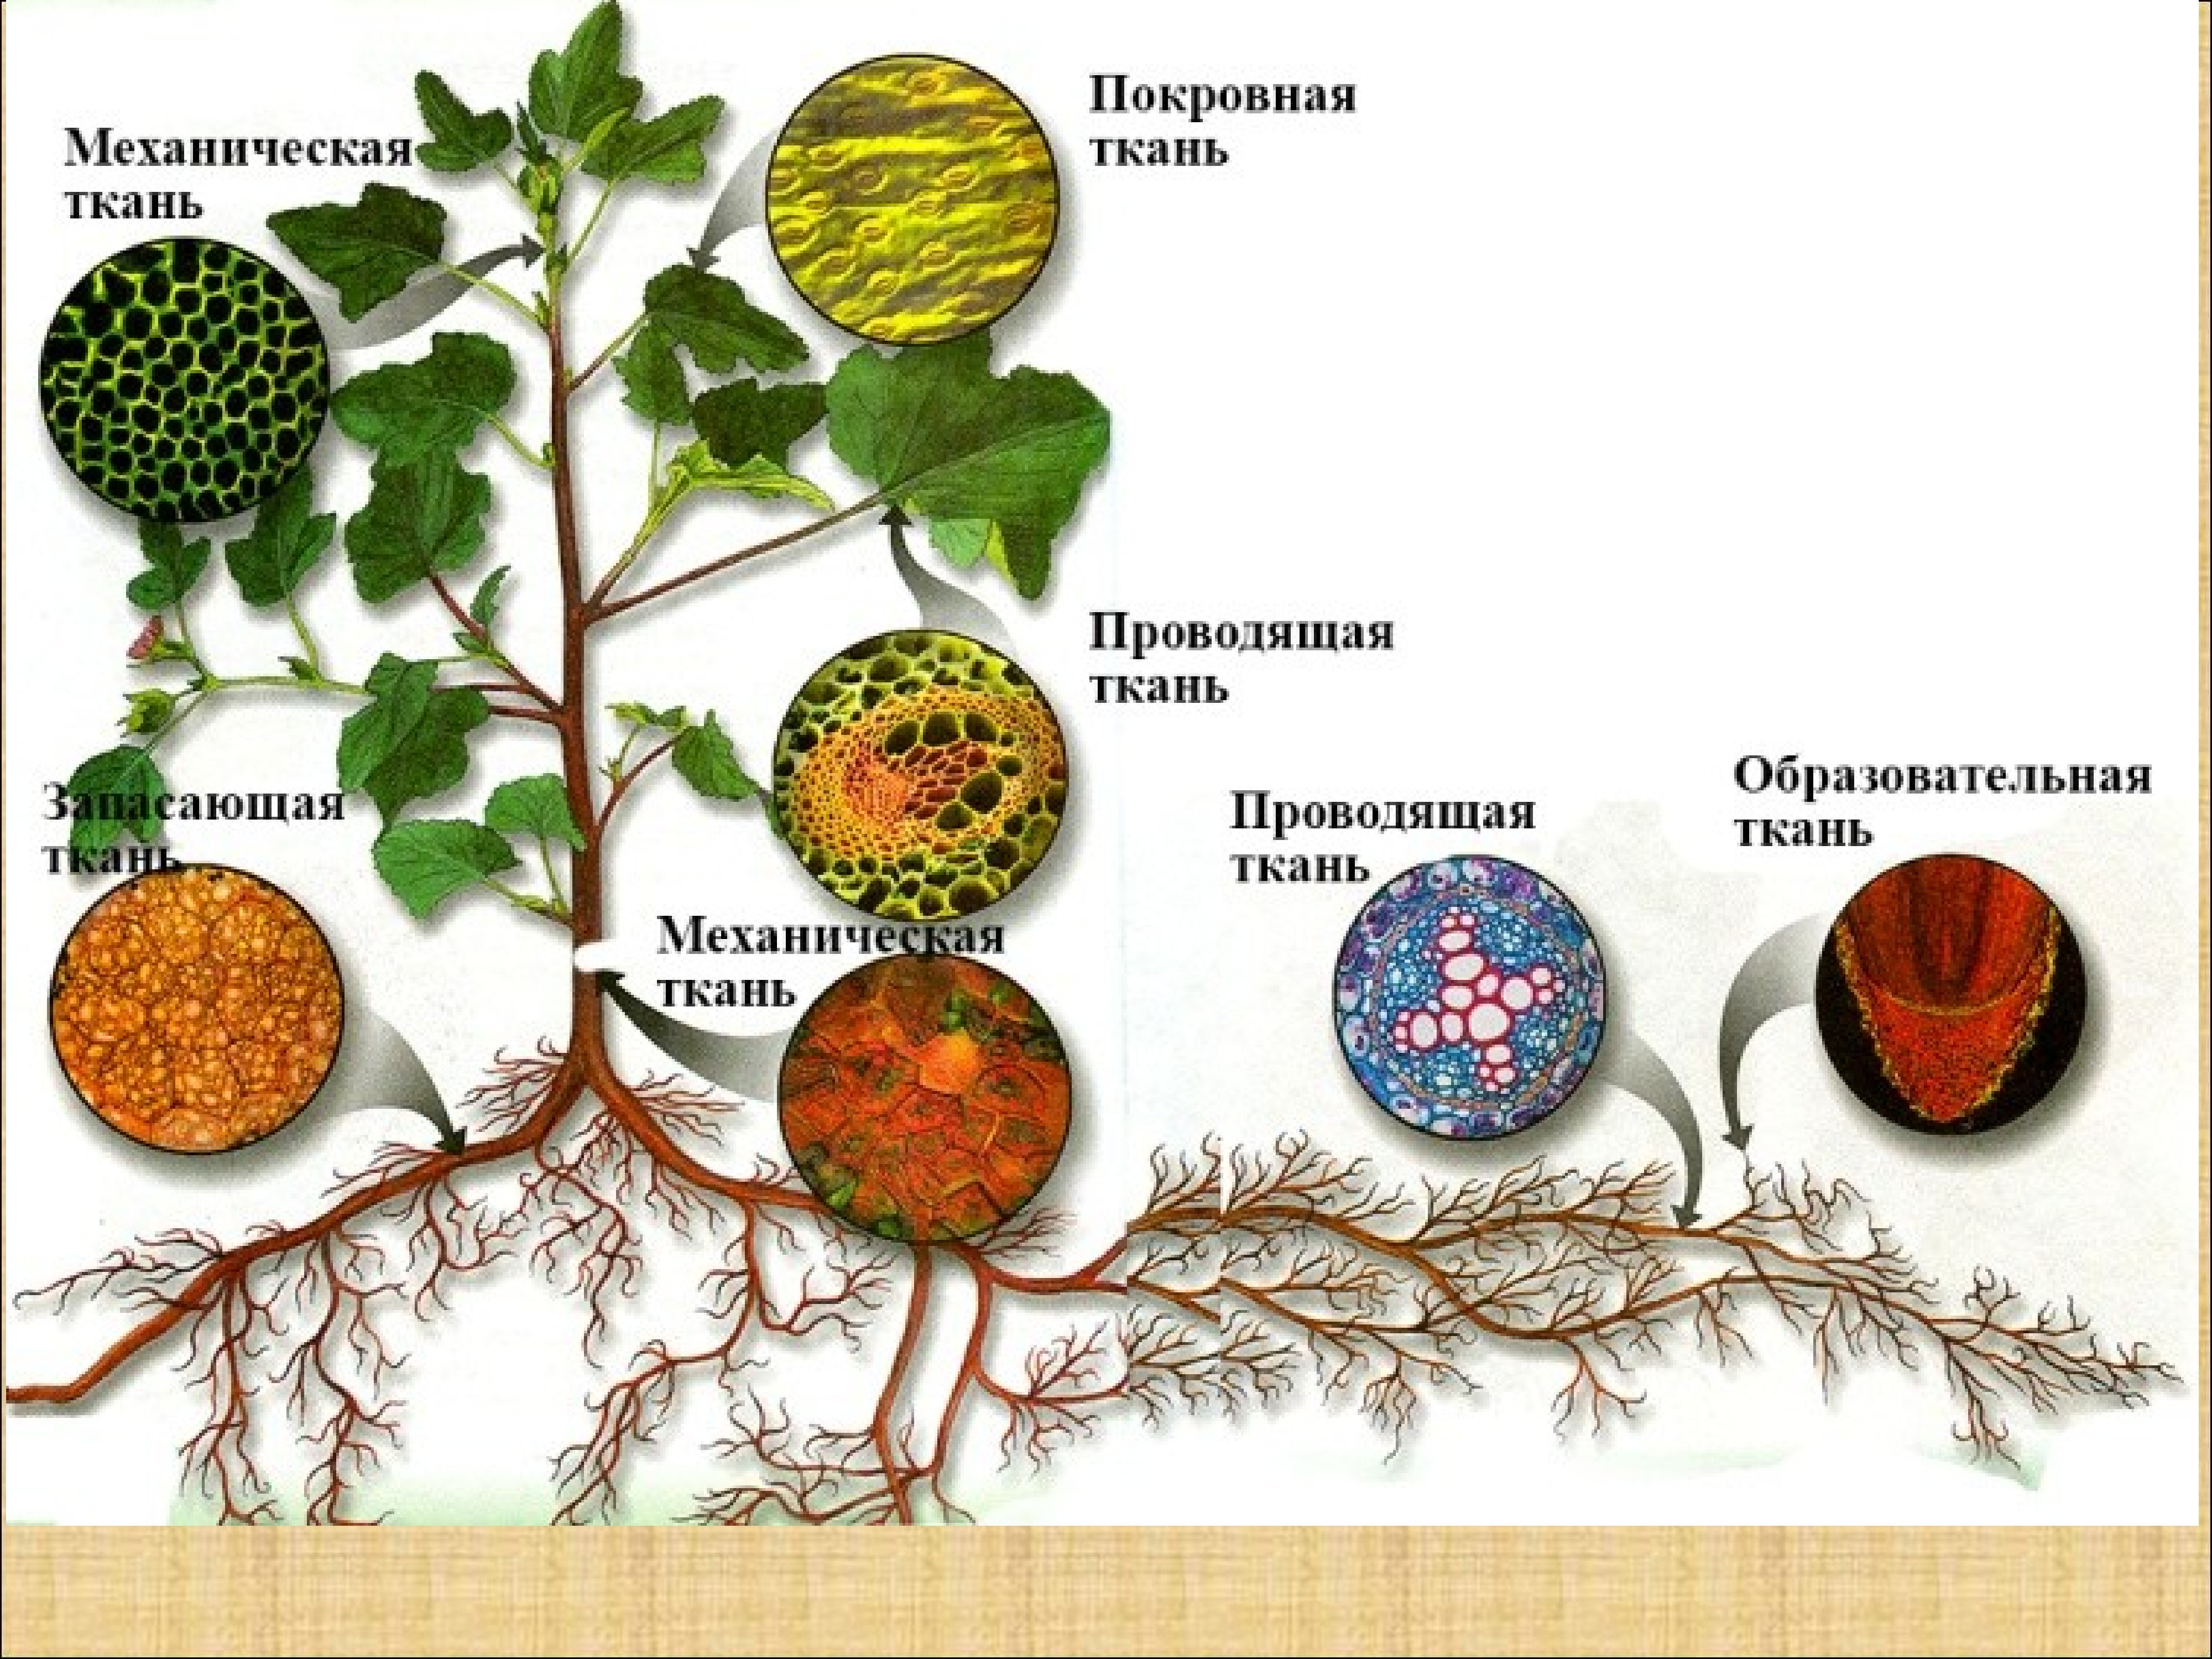 Ткани растений и их части